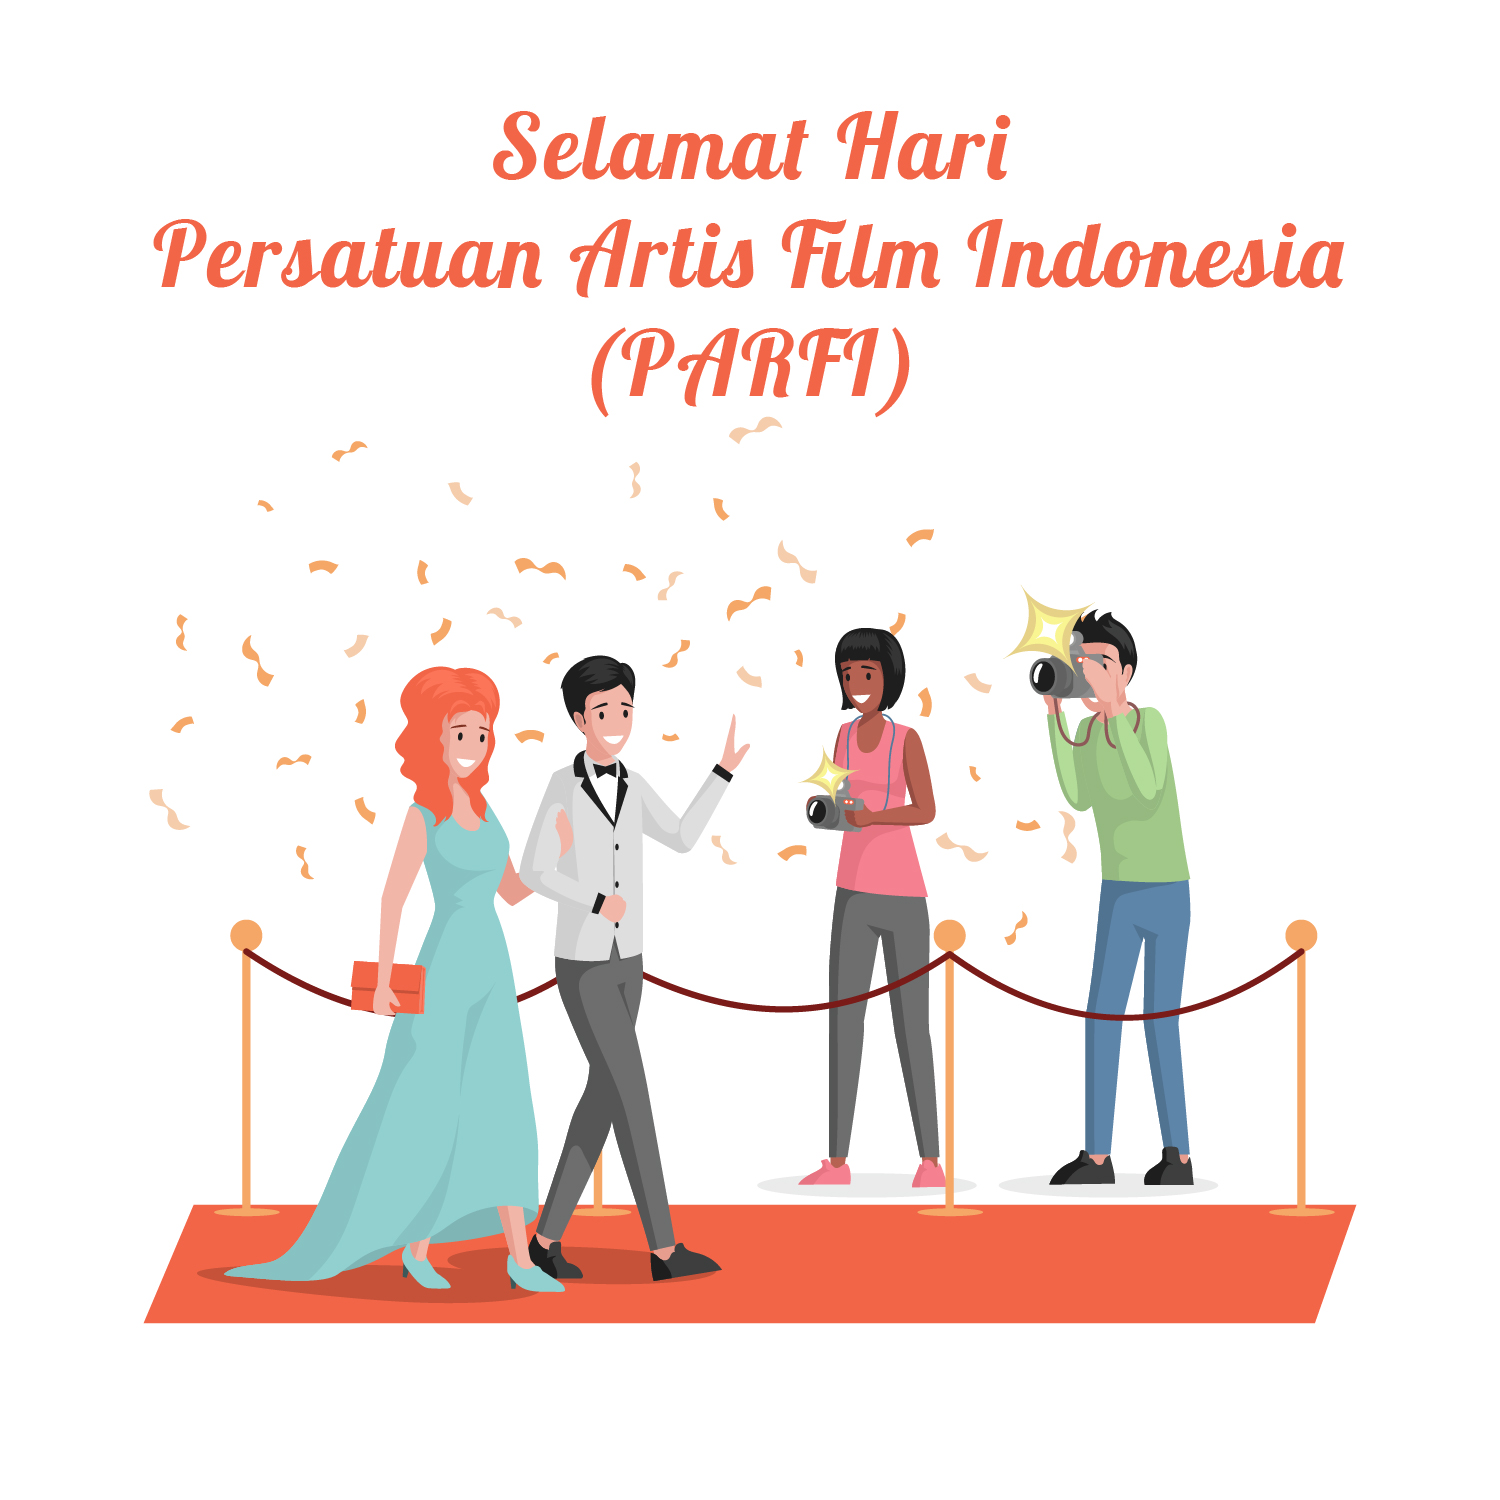 10 Gambar Poster Ucapan Selamat Hari Persatuan Artis Film Indonesia (PARFI)